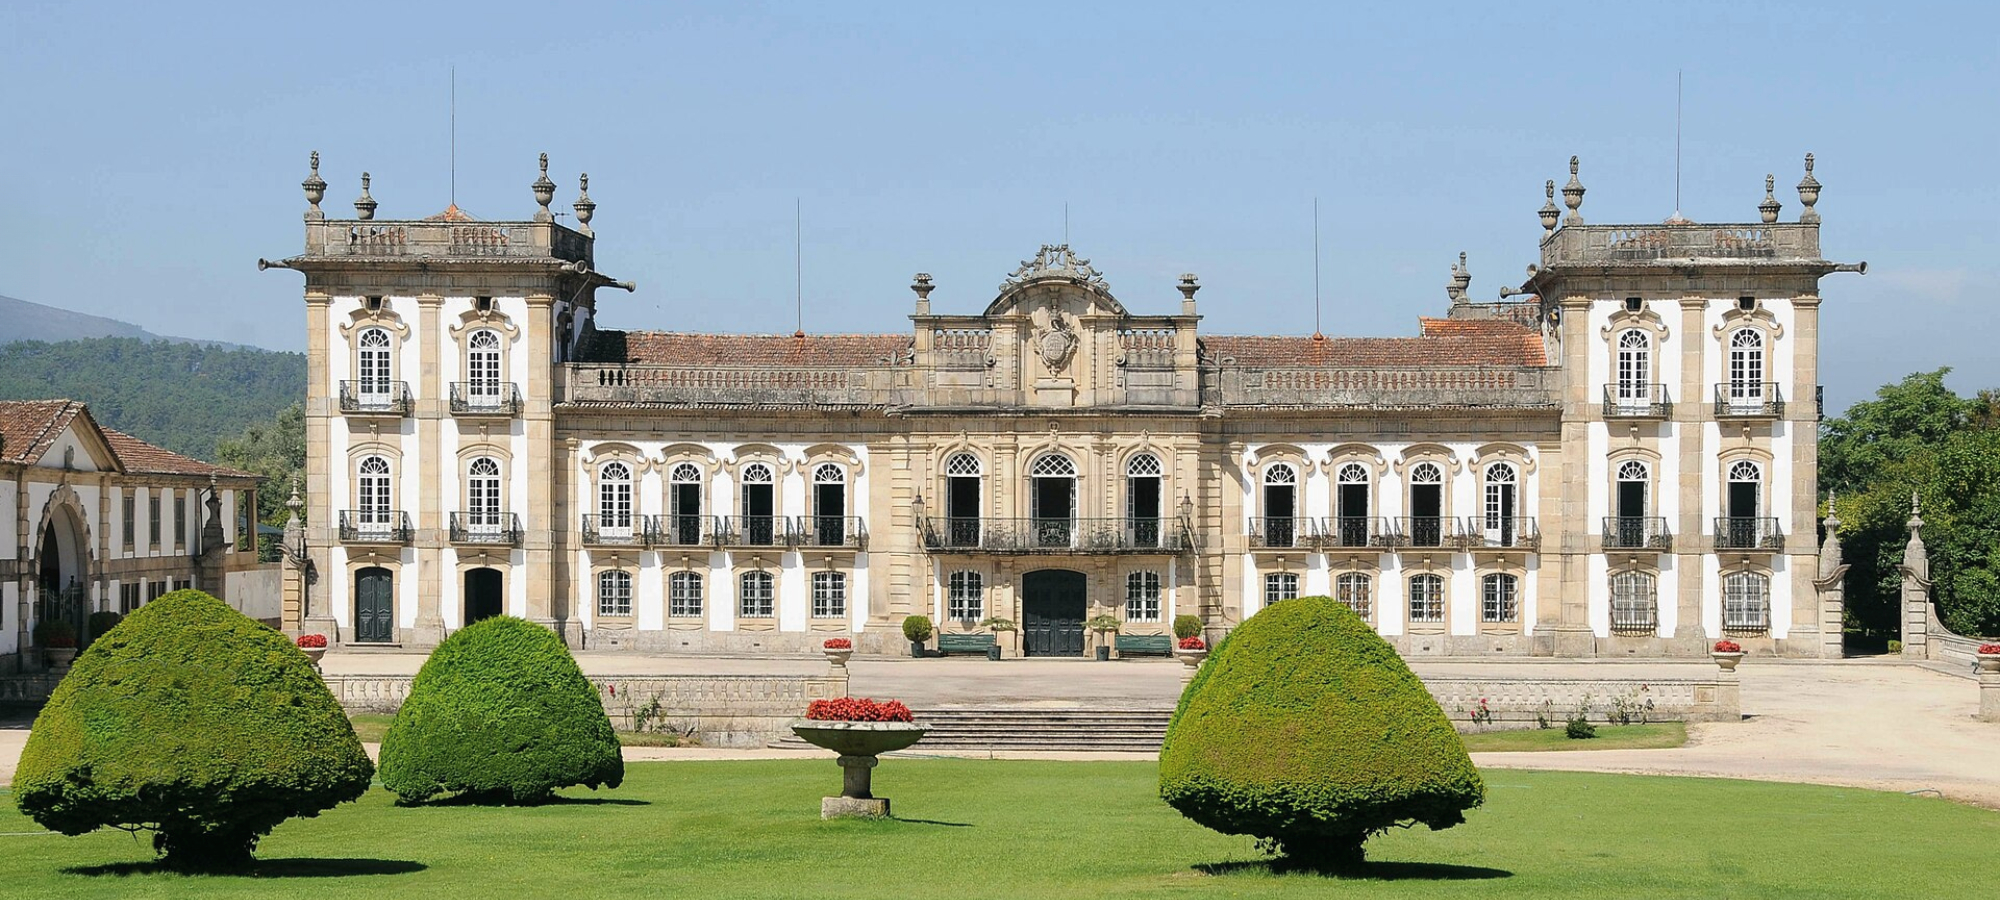 Palácio da Brejoeira in Portugal, Klassizistischer Palast des frühen 19. Jh. mit prächtiger Einrichtung, Gärten, Weinbergen